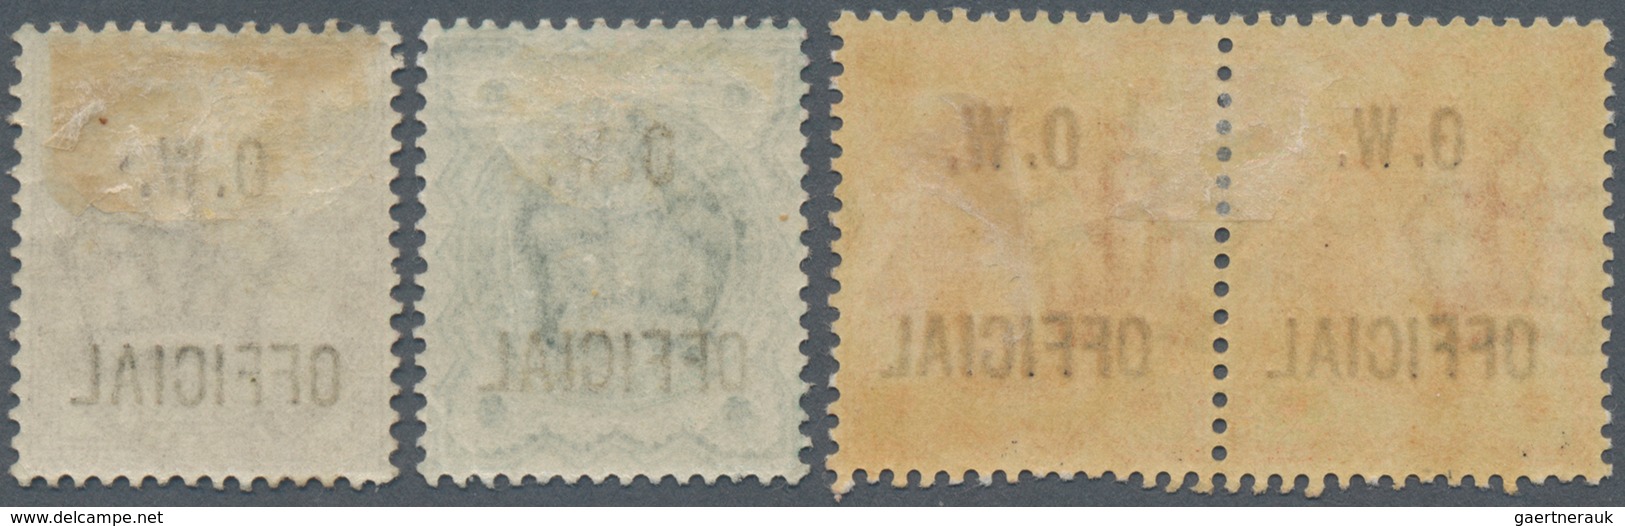 Großbritannien - Dienstmarken: 1896/1902, Office Of Works, QV ½d. Orange Horizontal Pair, ½d. Blue-g - Dienstmarken